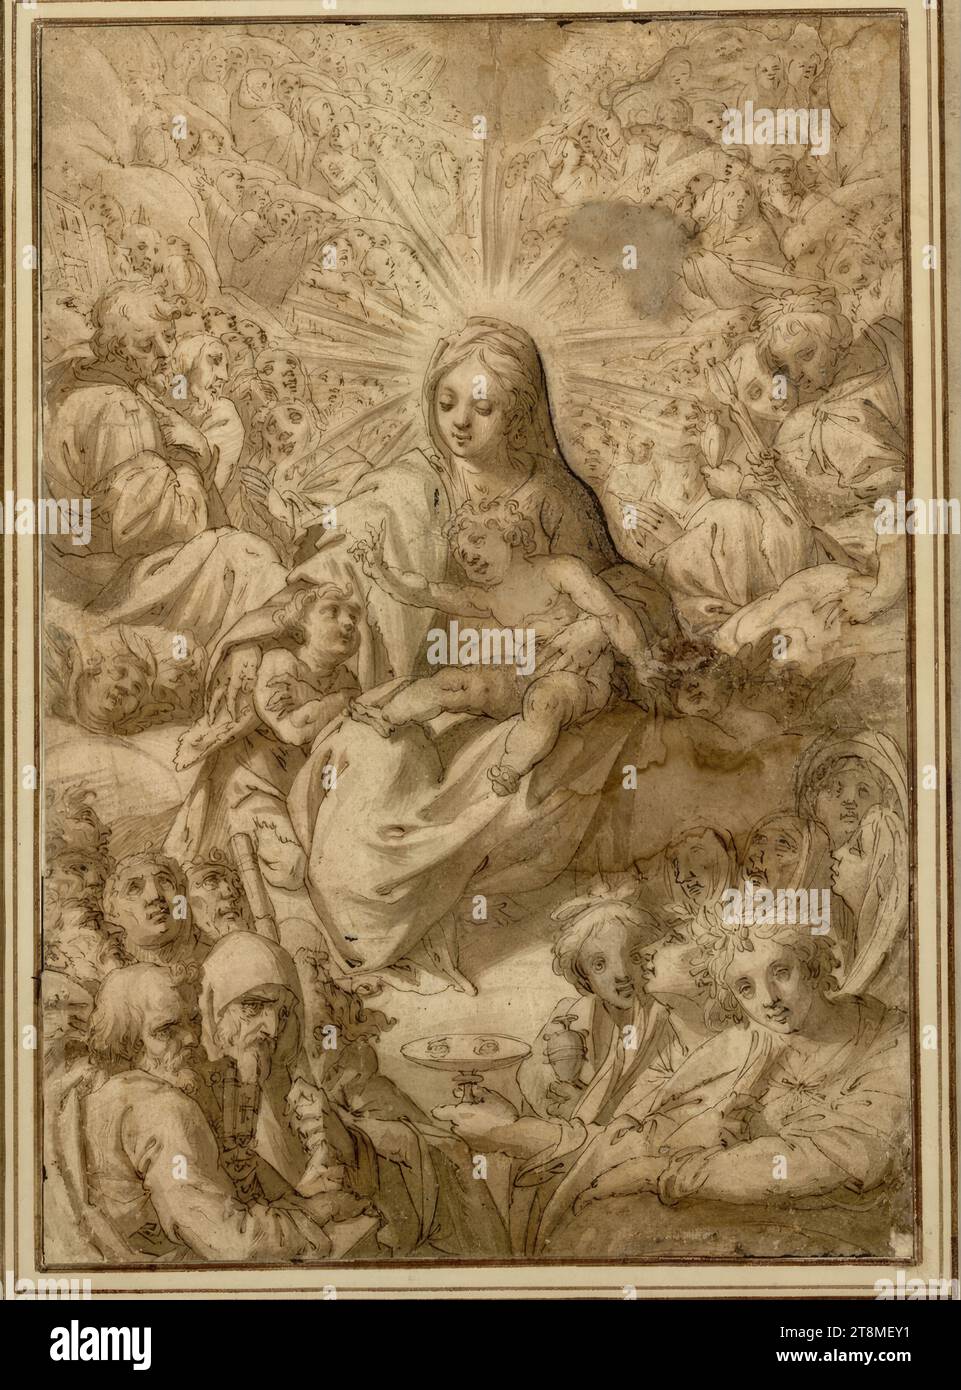 La Madonna nel coro di santi e martiri, anonimi, intorno al 1600, disegno, penna e inchiostro in marrone, lavata, un po' lavata, 32,2 x 22,6 cm, r.l. duca Alberto di Sassonia-Teschen Foto Stock